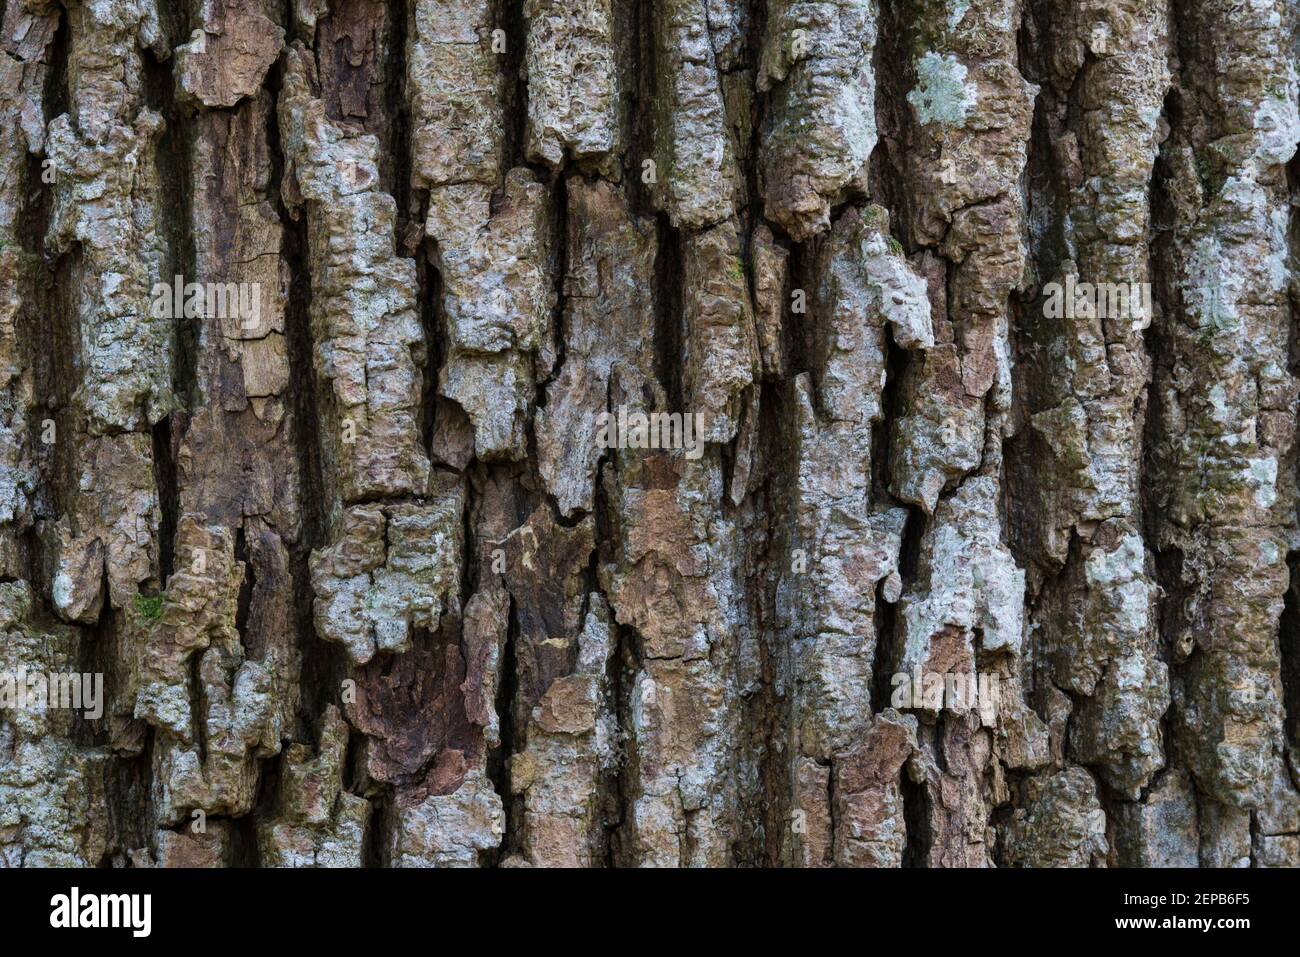 Alter Baum, Rinde, Baumrinde, Urwald, Eiche, (Quercus robur), Stock Photo